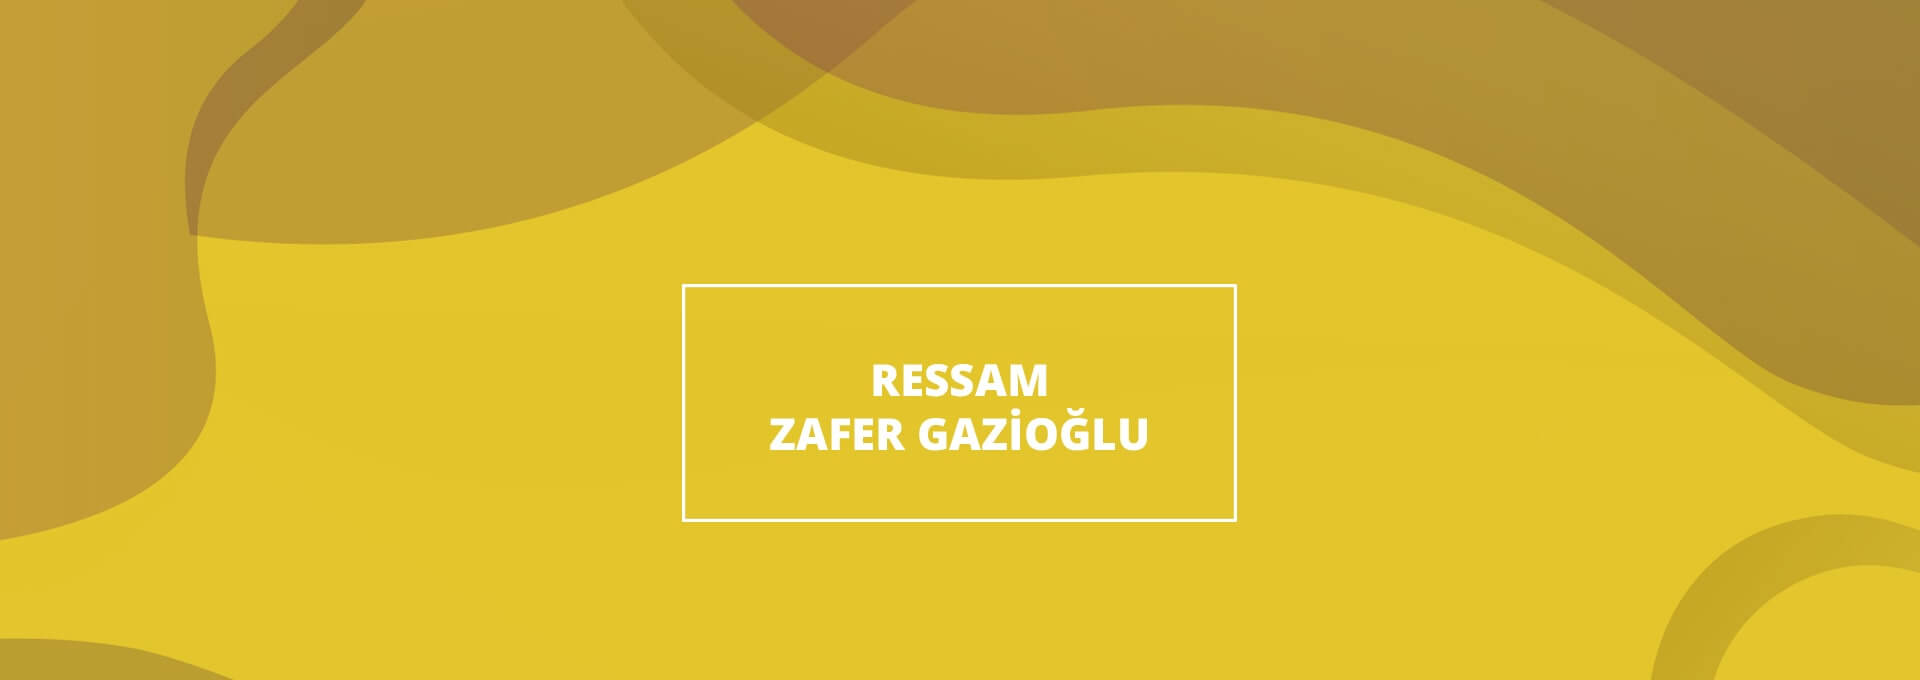 Ressam Zafer Gazioğlu